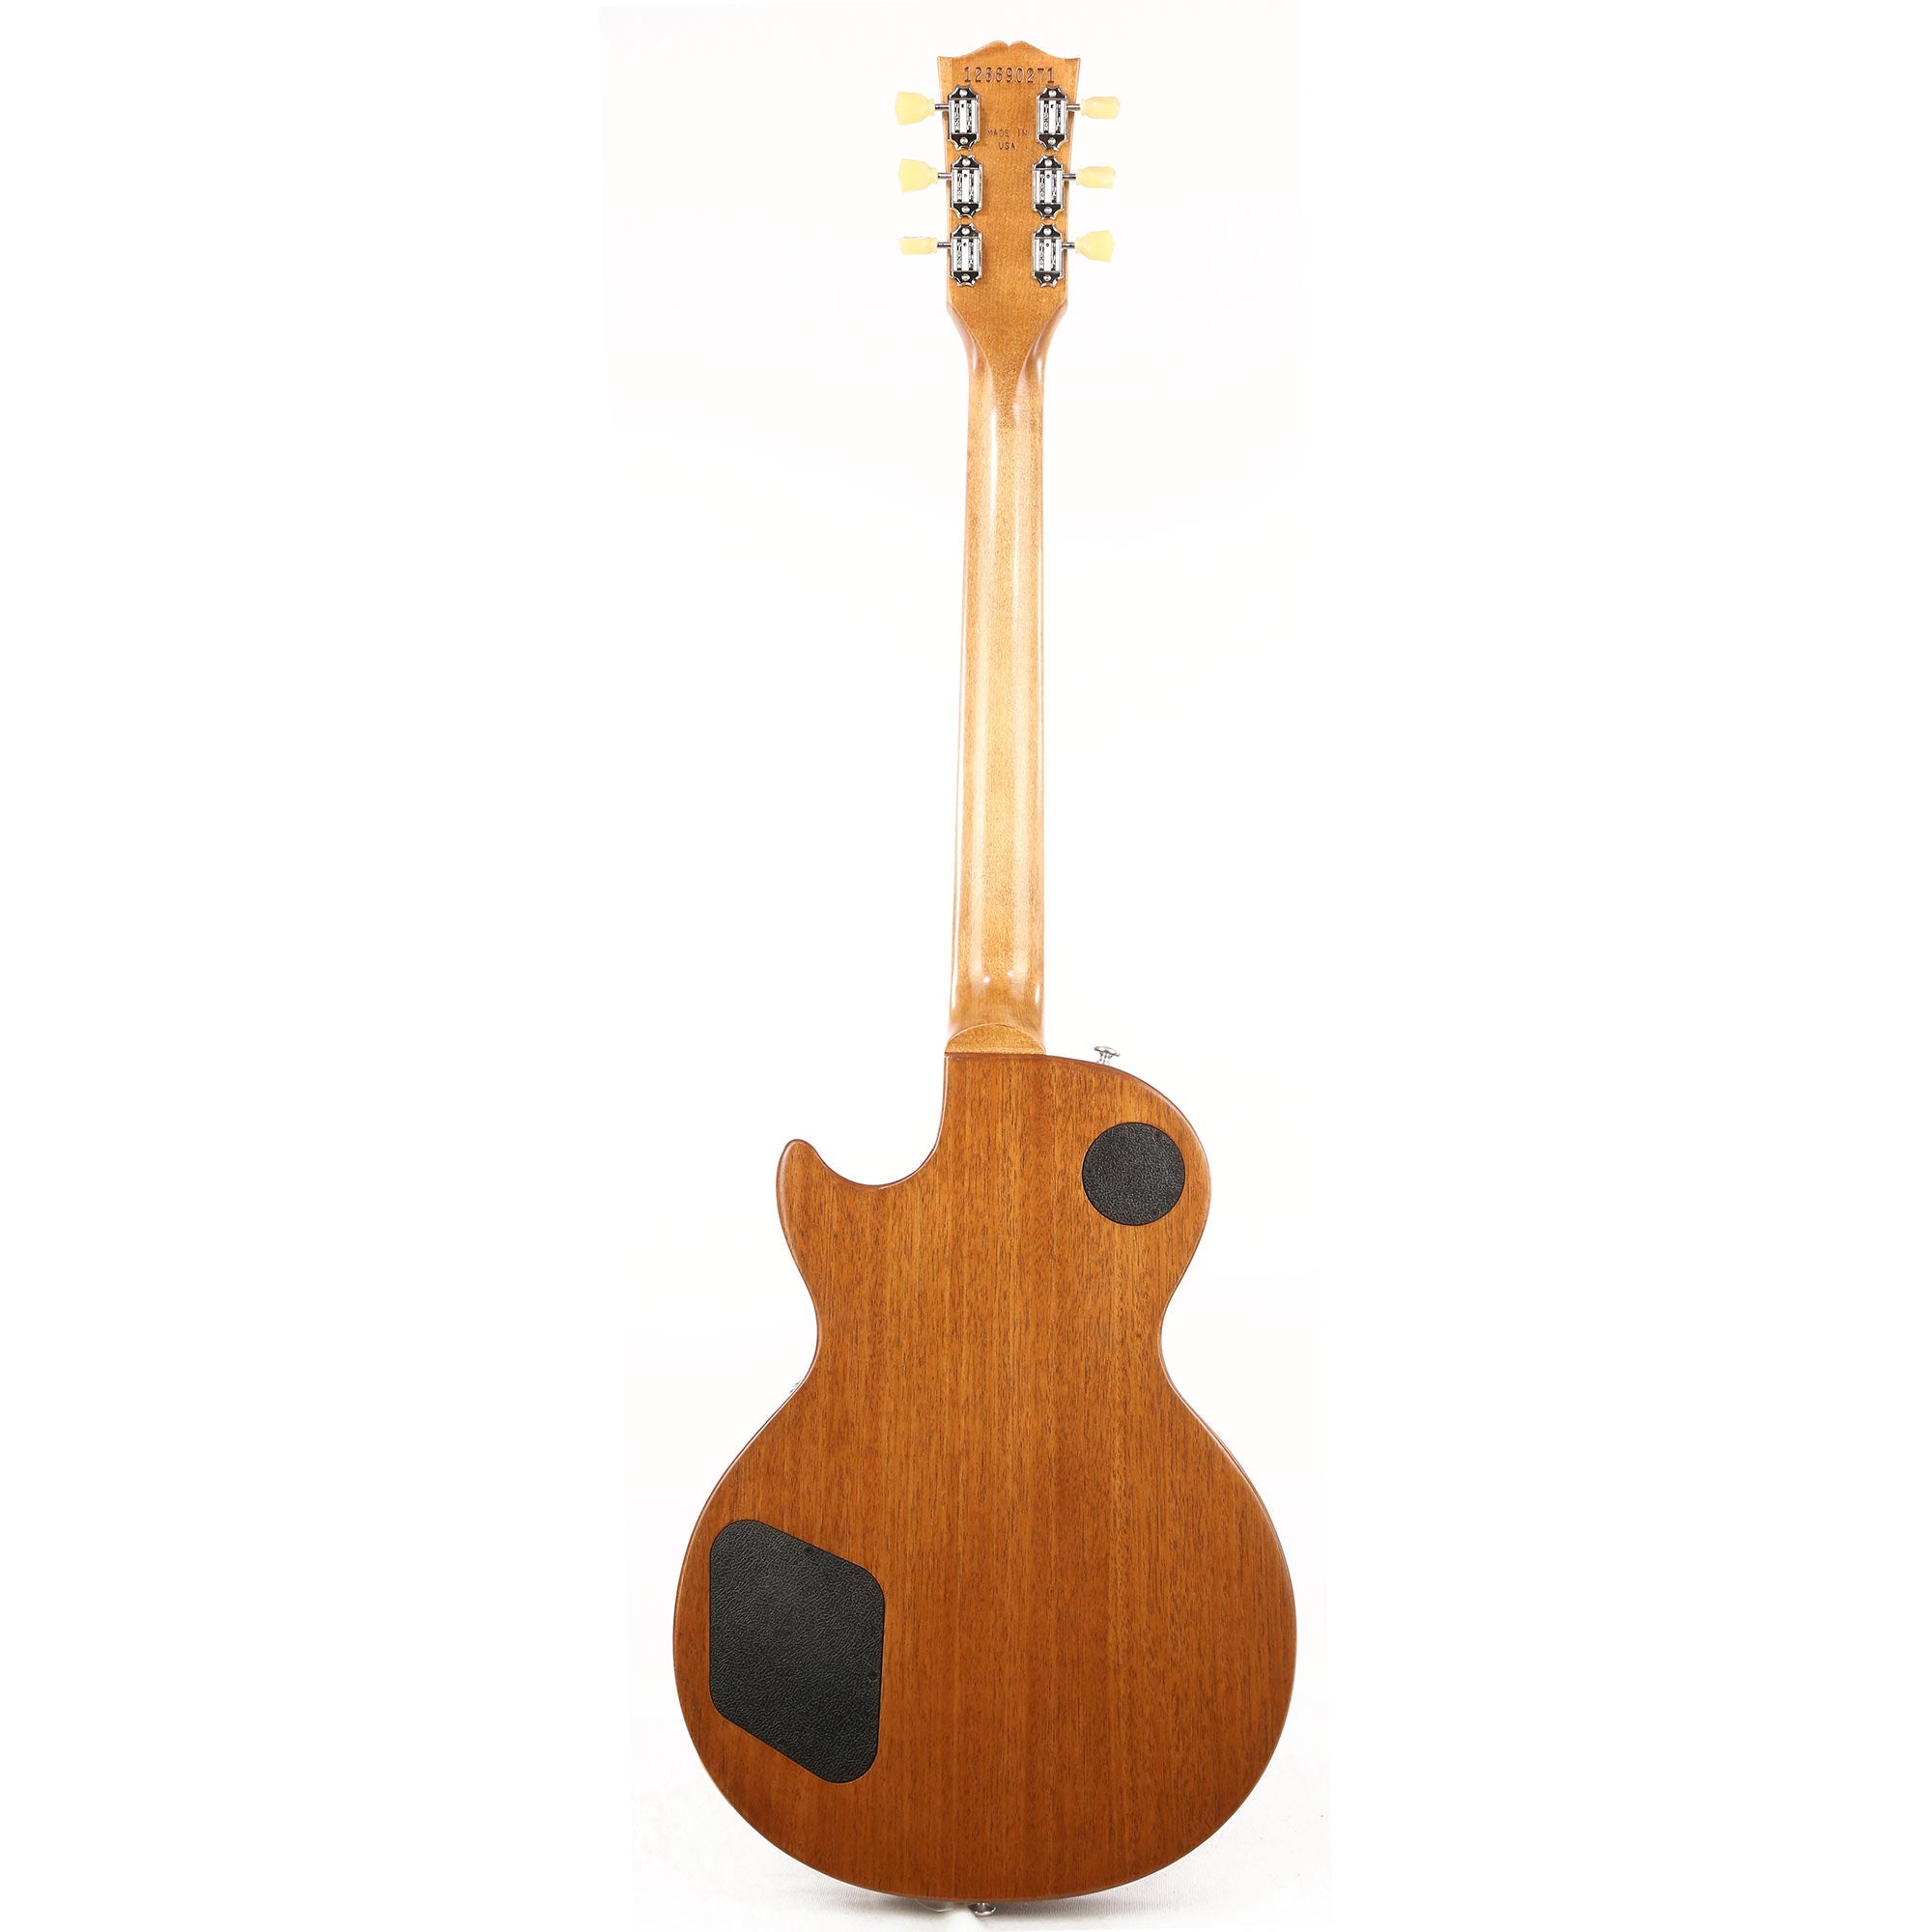 Gibson Les Paul Tribute - Satin Honeyburst (Serial: 212620358)